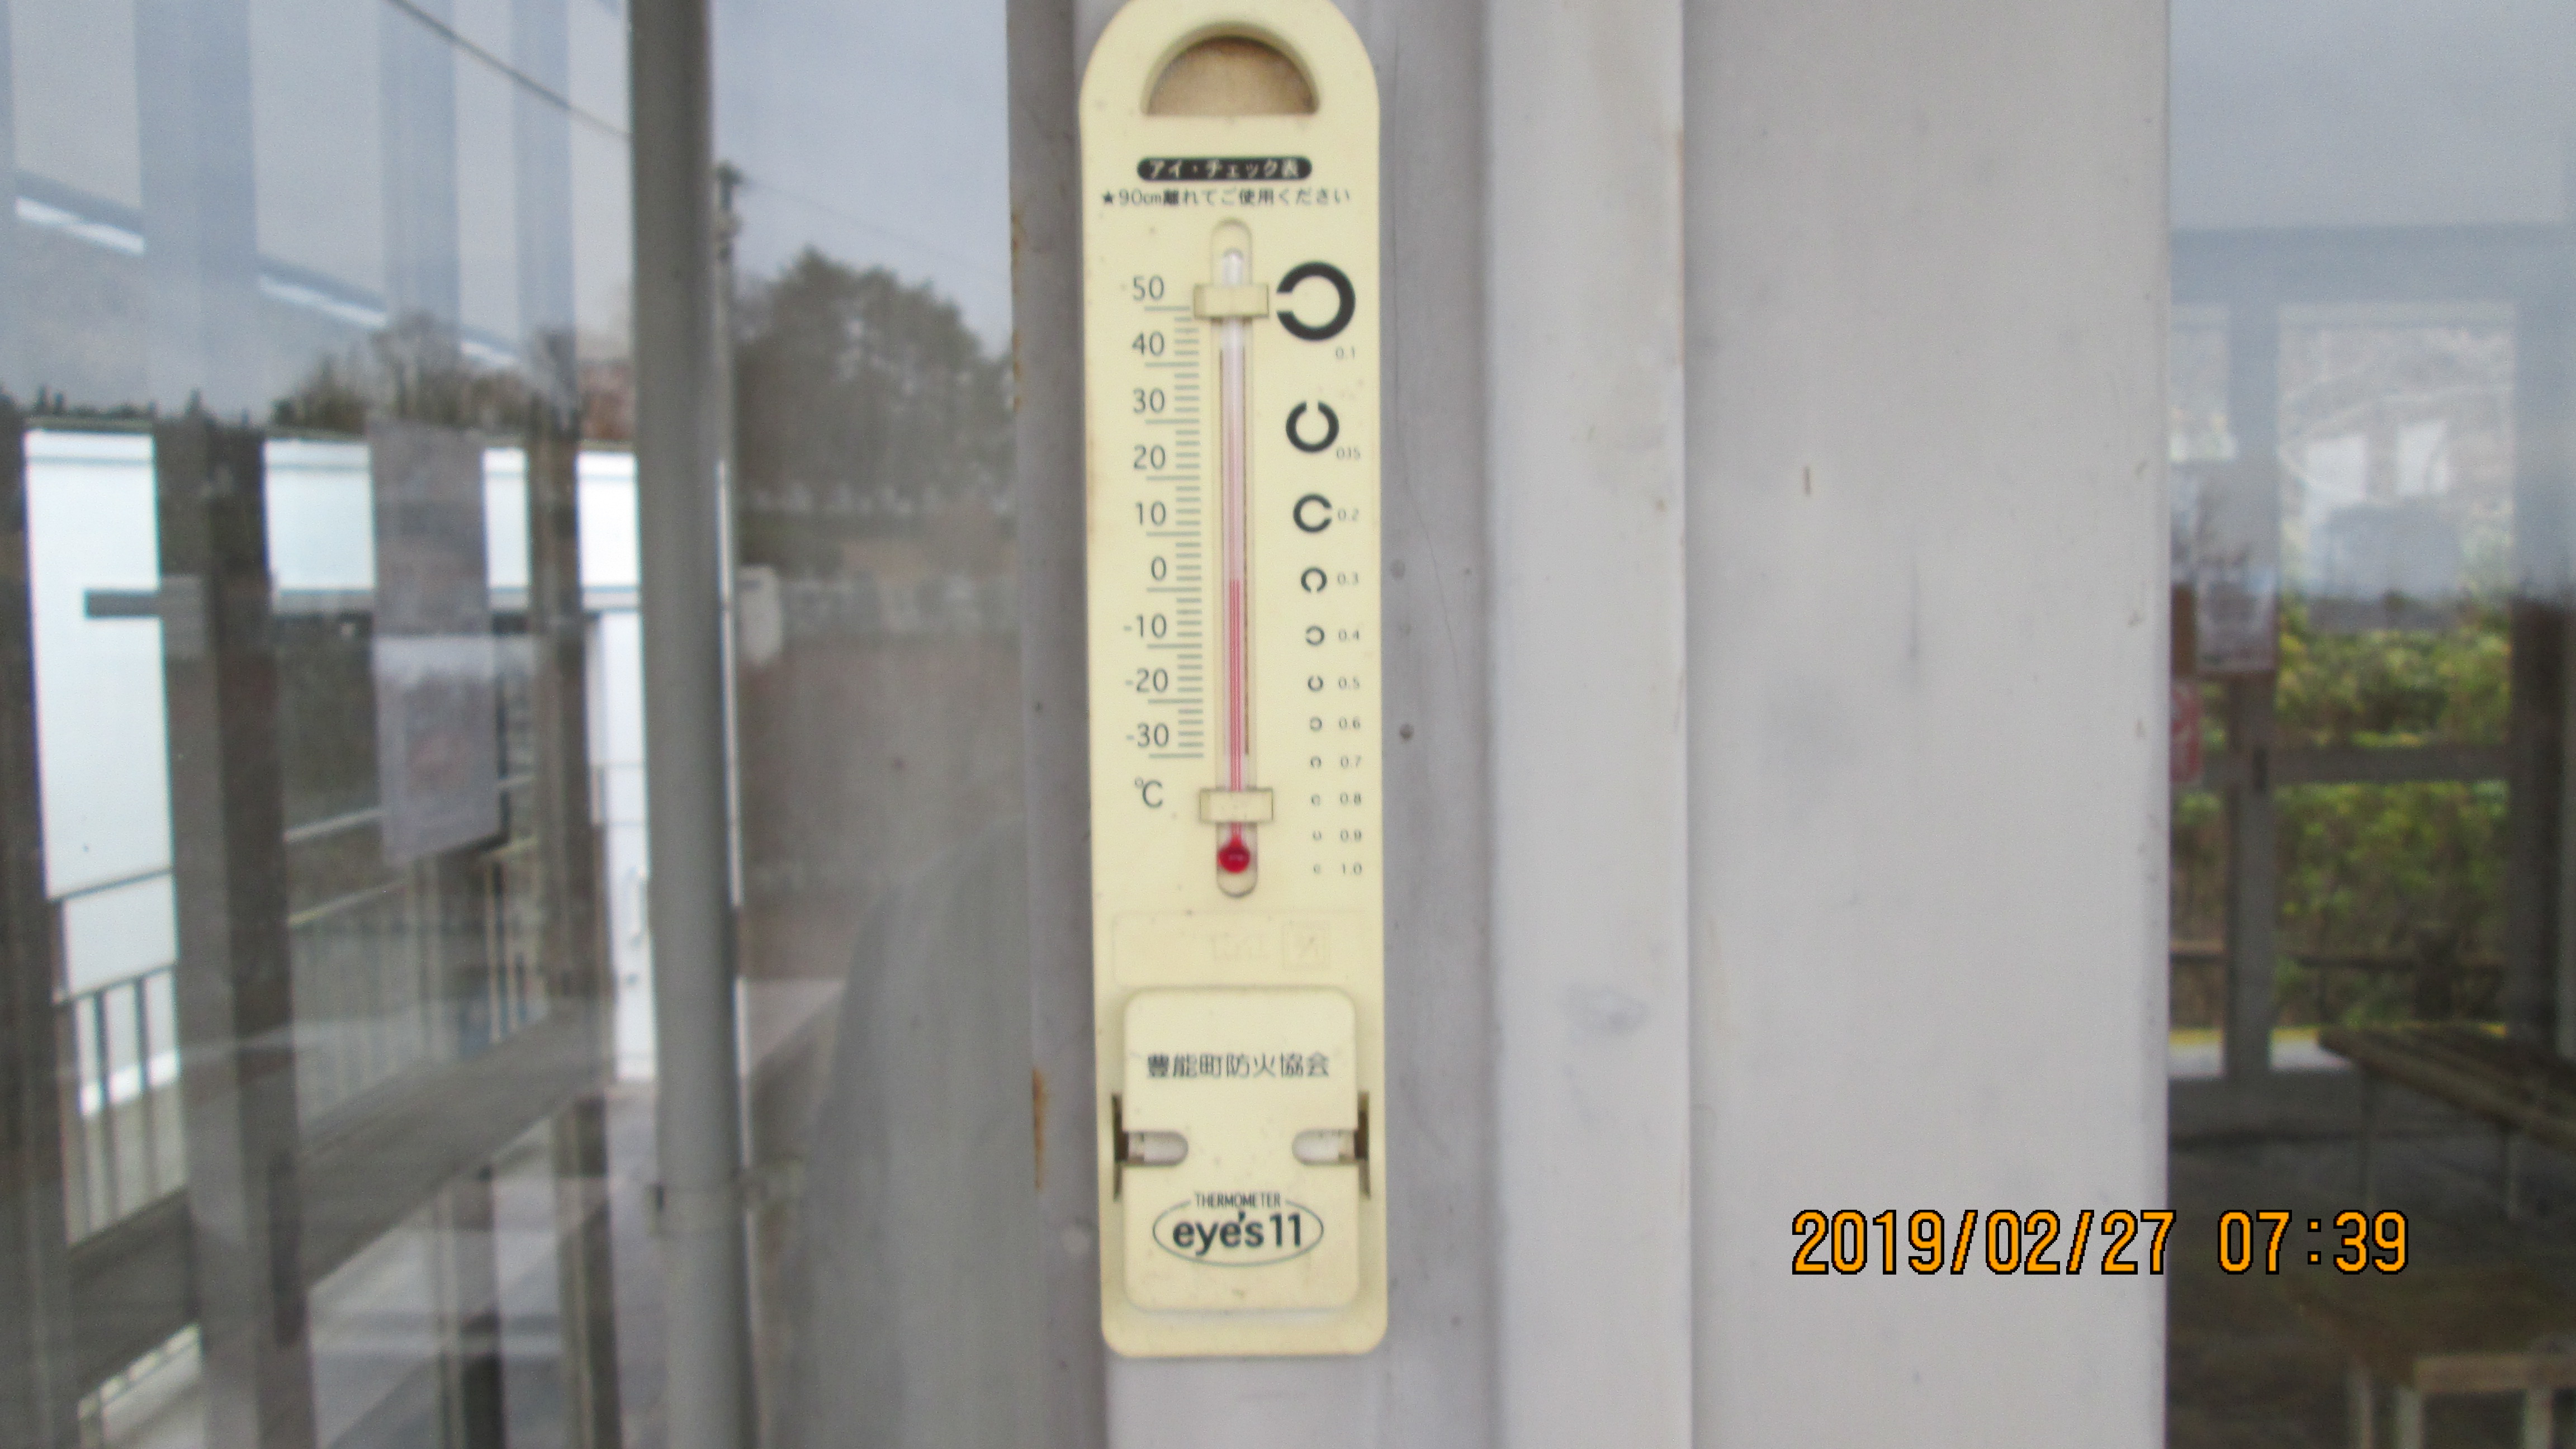 北口バス停・休憩所寒暖計 2℃